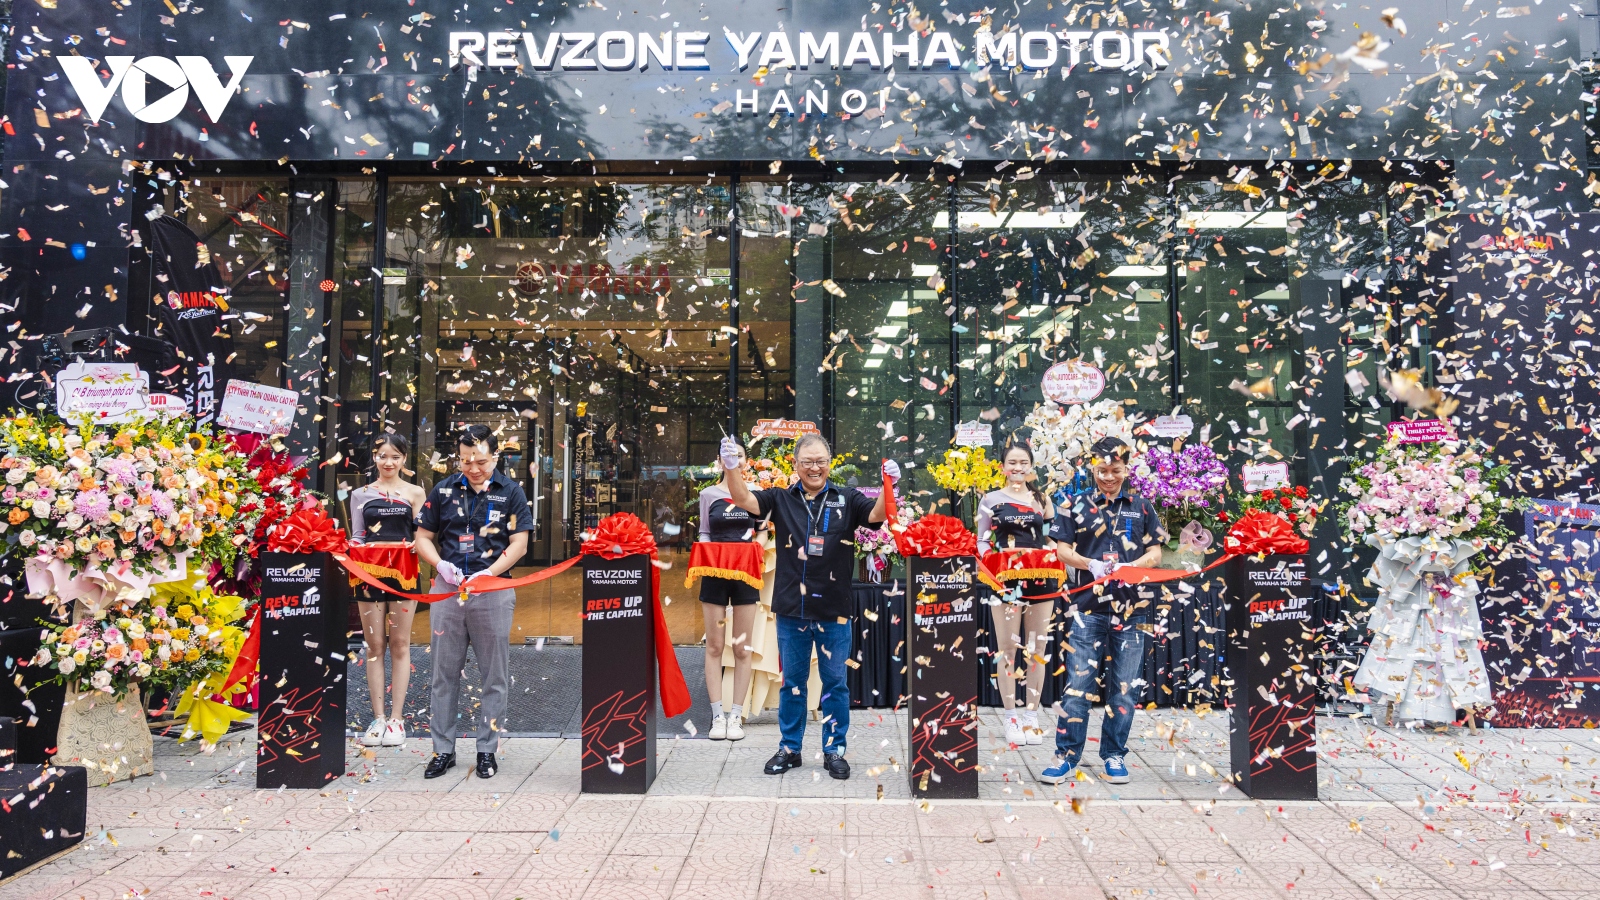 Yamaha khai trương showroom xe phân khối lớn đầu tiên tại Hà Nội